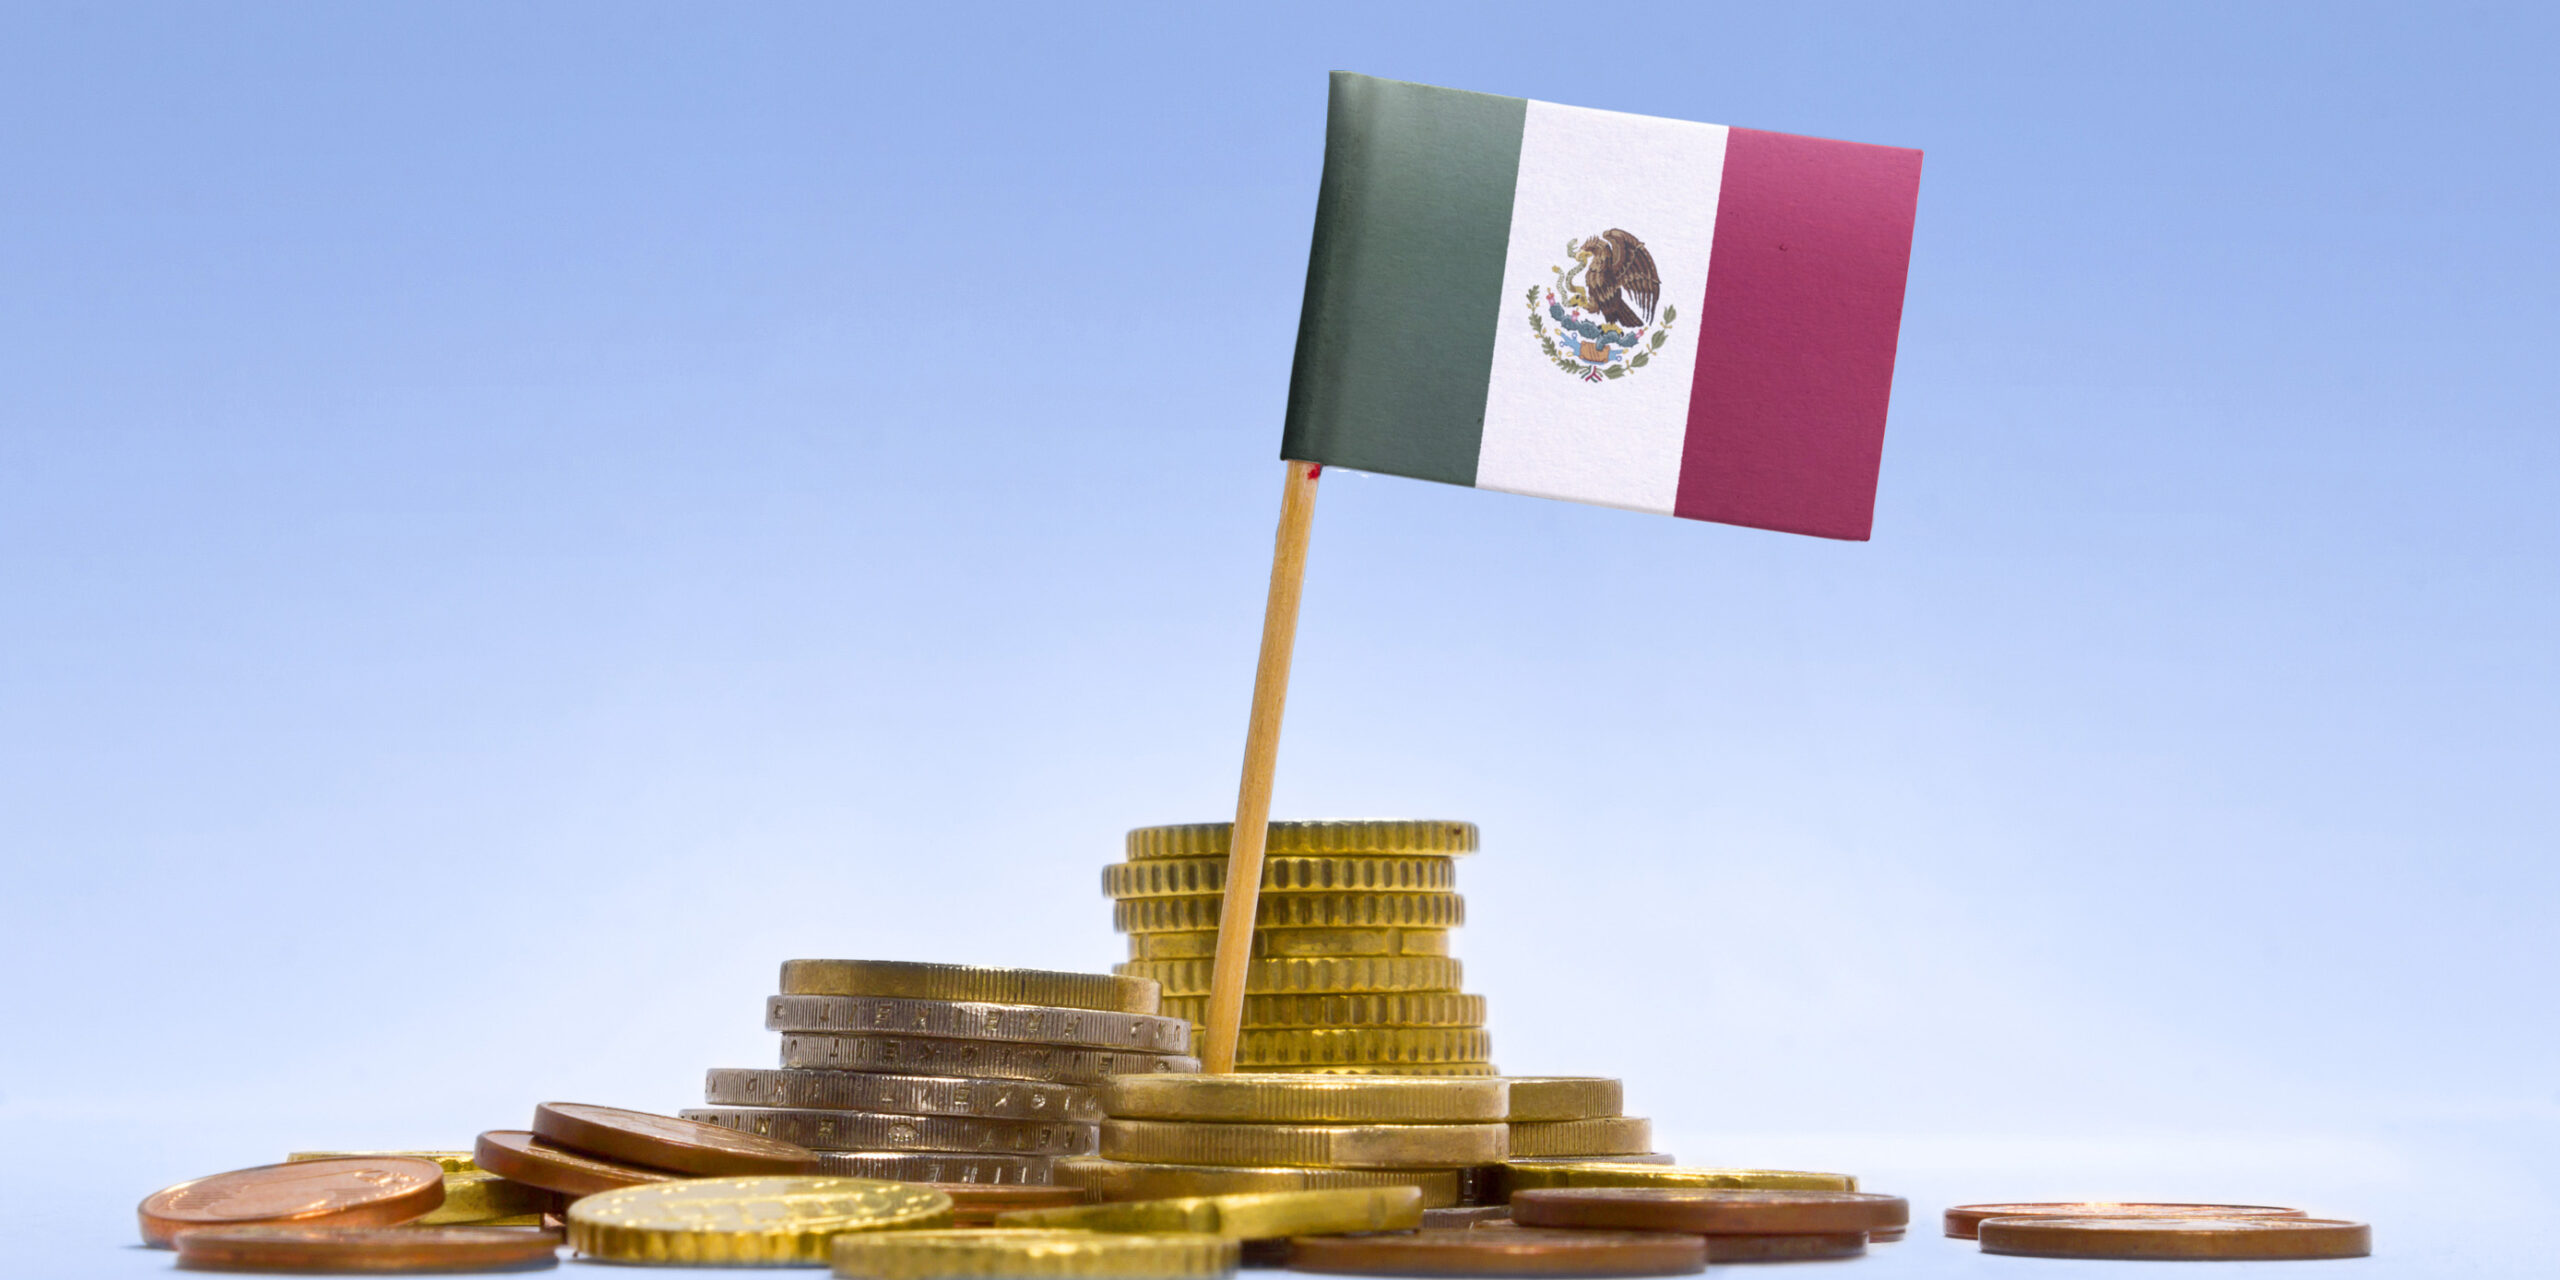 ¿Sabías qué? Temas financieros roban el sueño a los mexicanos, pasan 15 horas al mes preocupados; asegura estudio | El Imparcial de Oaxaca